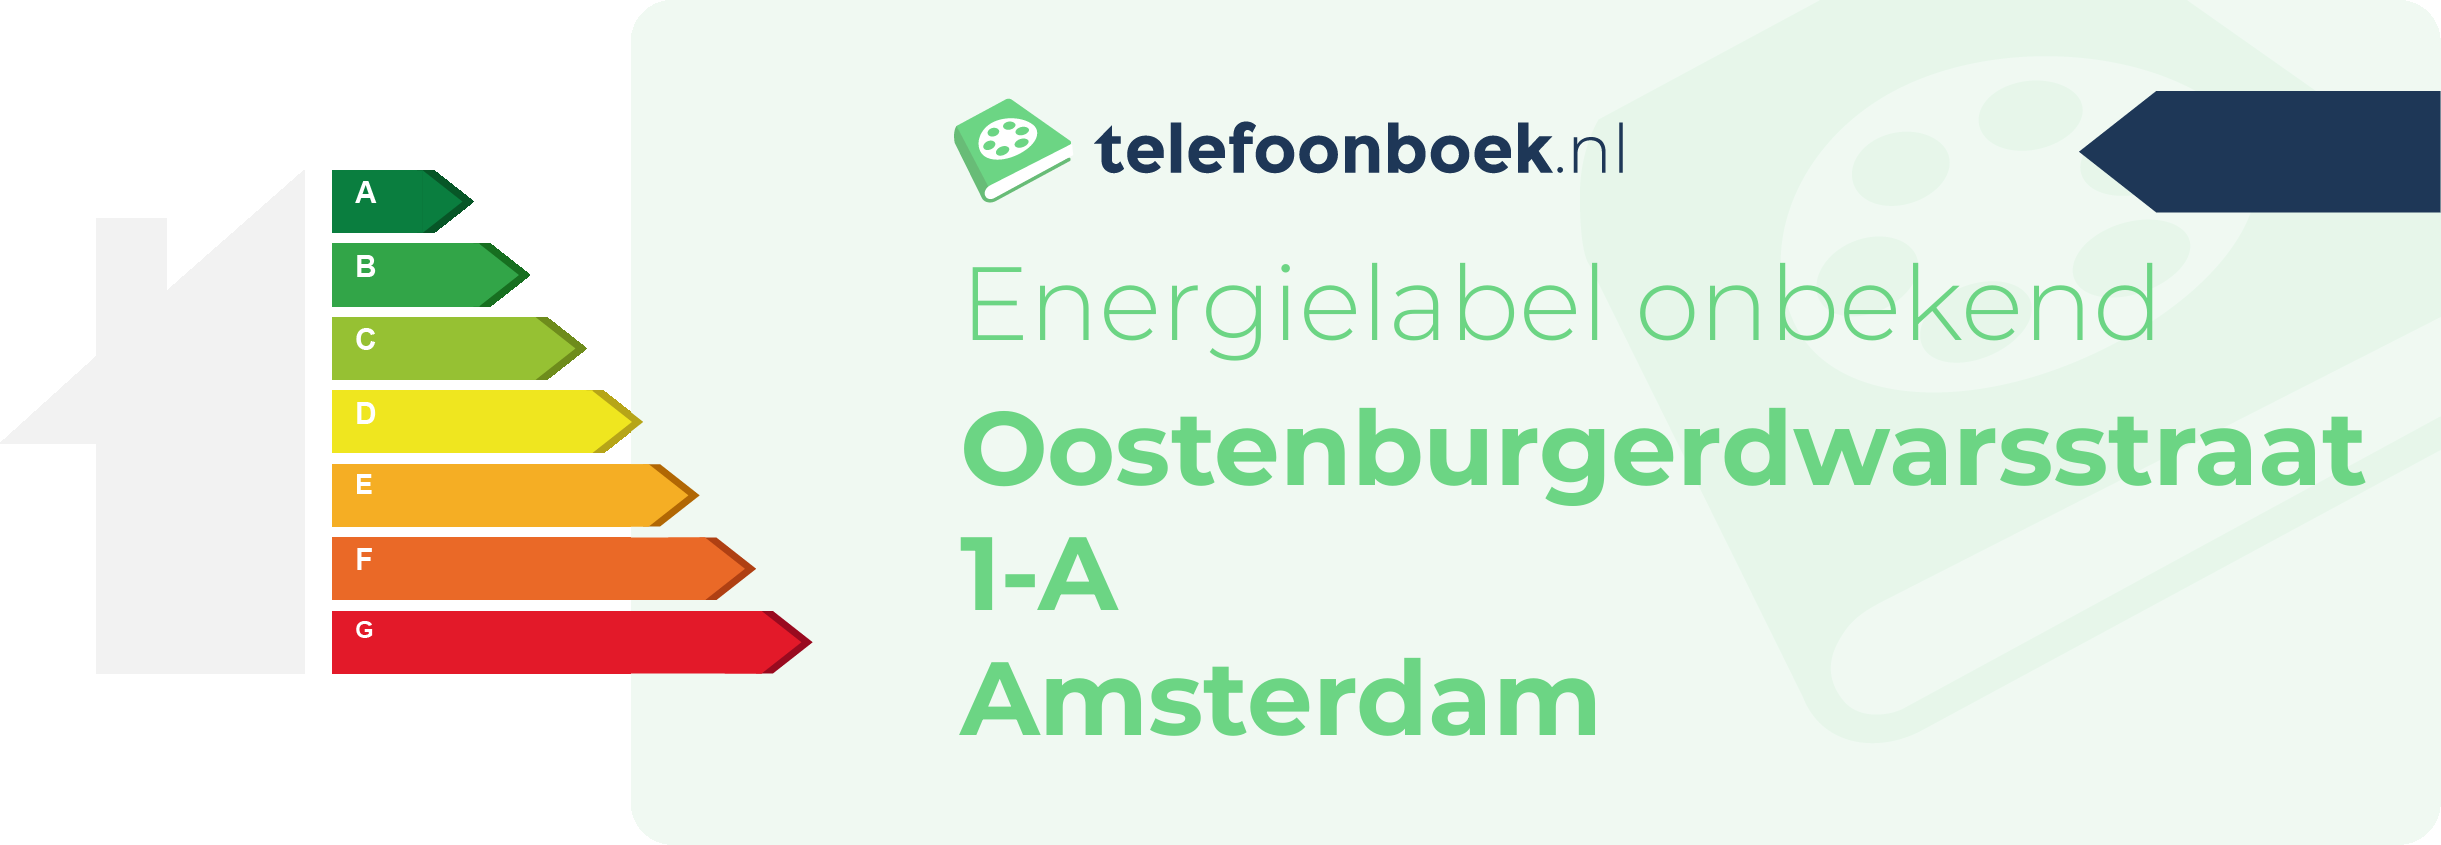 Energielabel Oostenburgerdwarsstraat 1-A Amsterdam